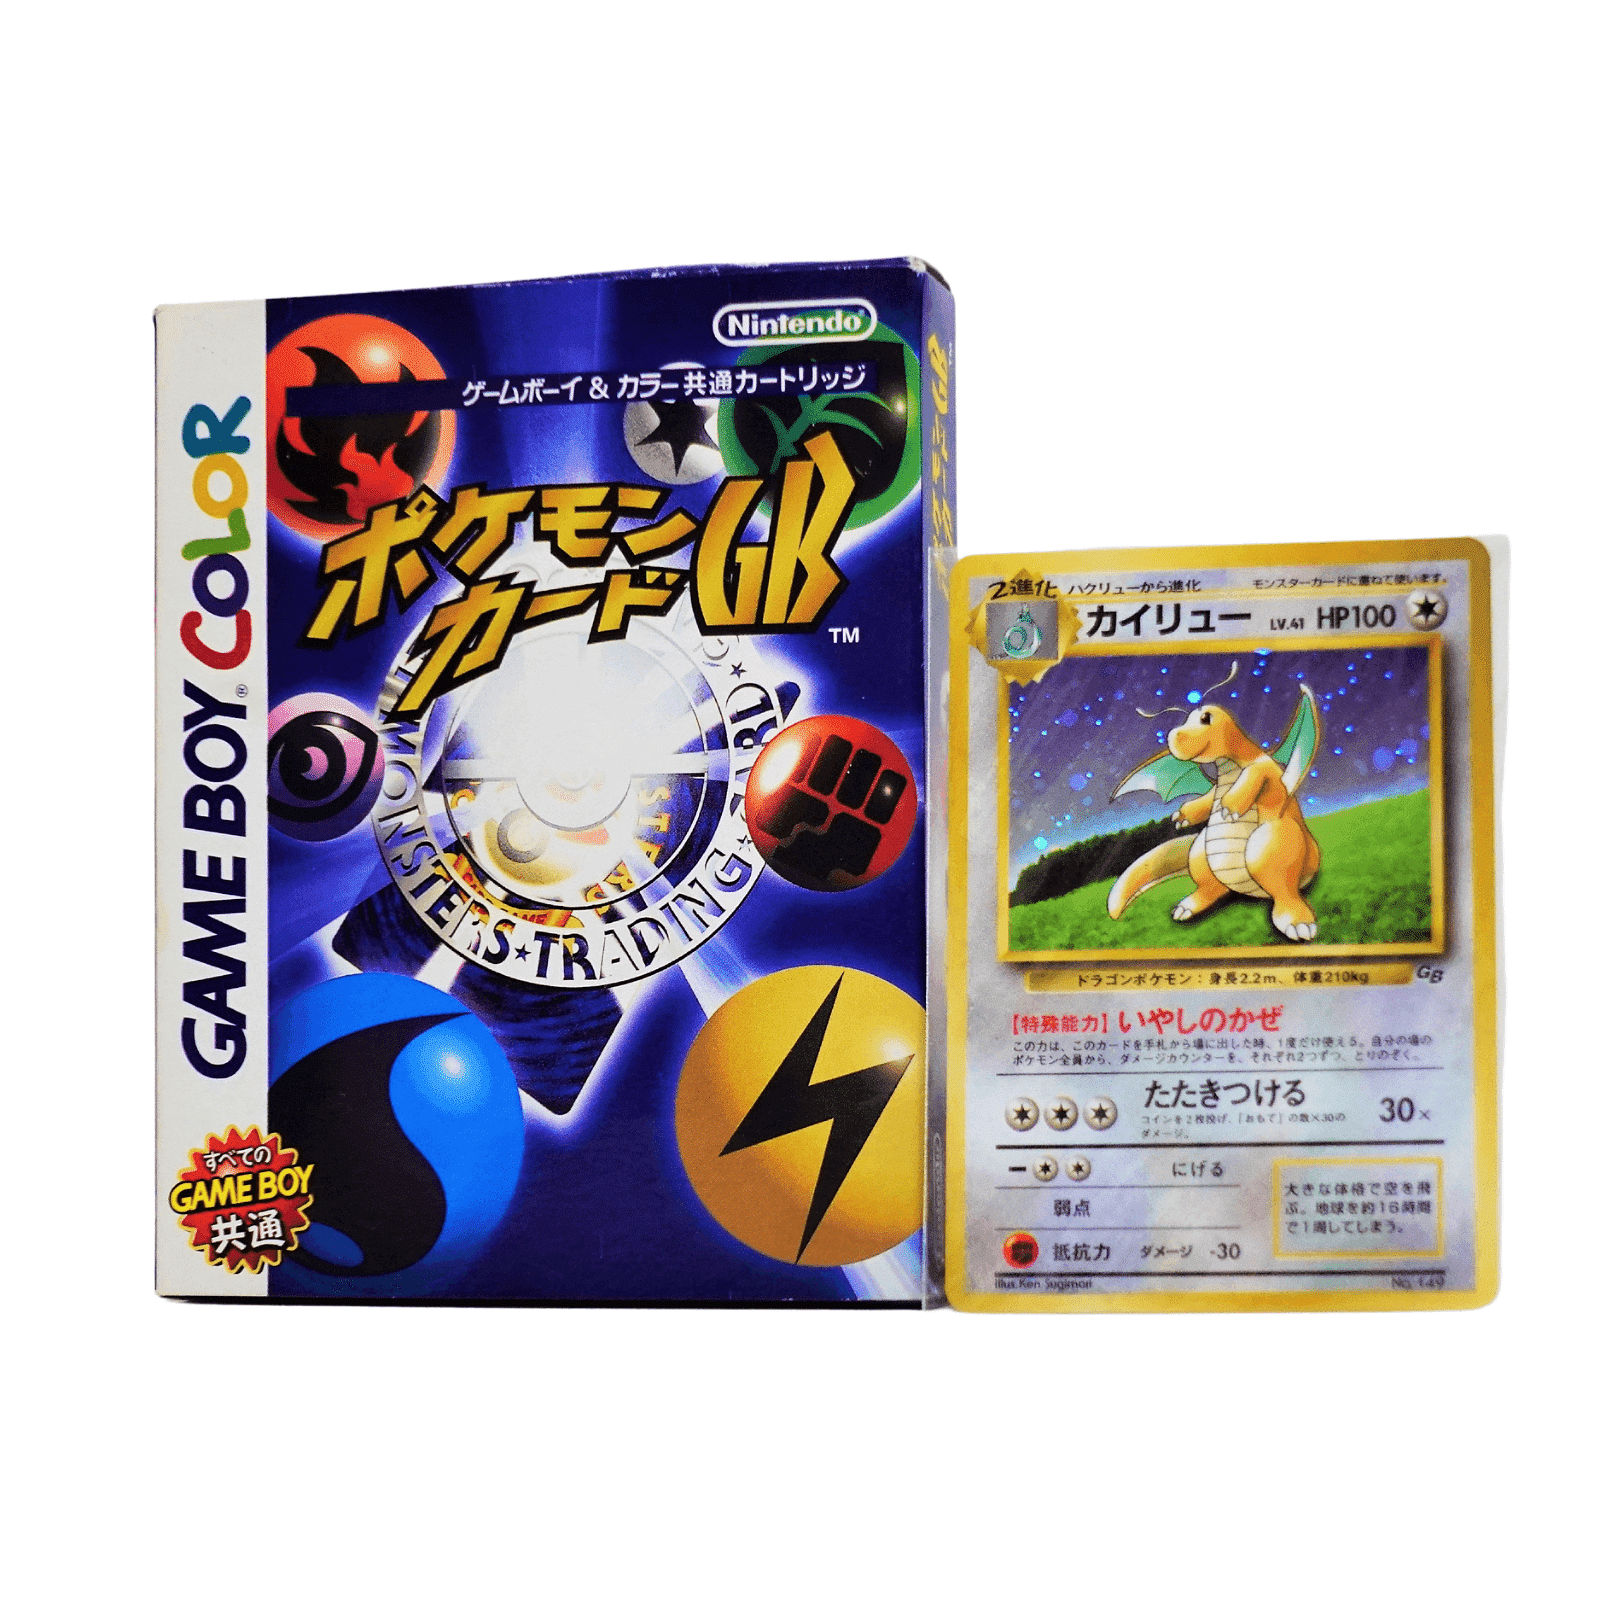 Pokémon Card Game GB + Dragonite GB Unopened ChitoroShop